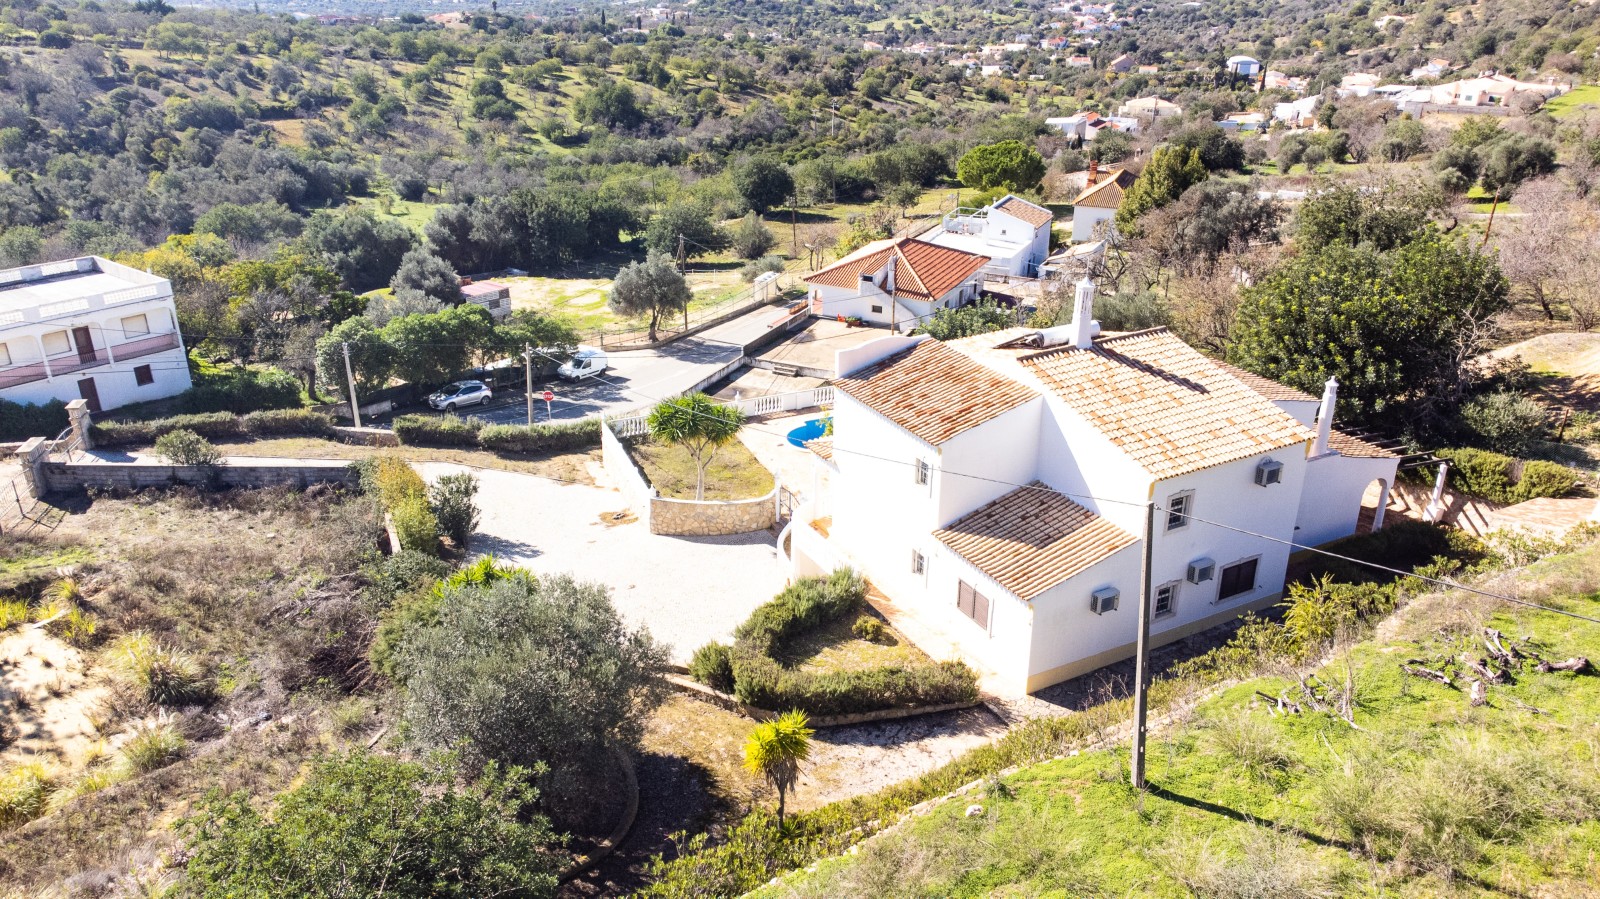 Moradia V4, e terreno, para venda, em Boliqueime, Loulé, Algarve_245319